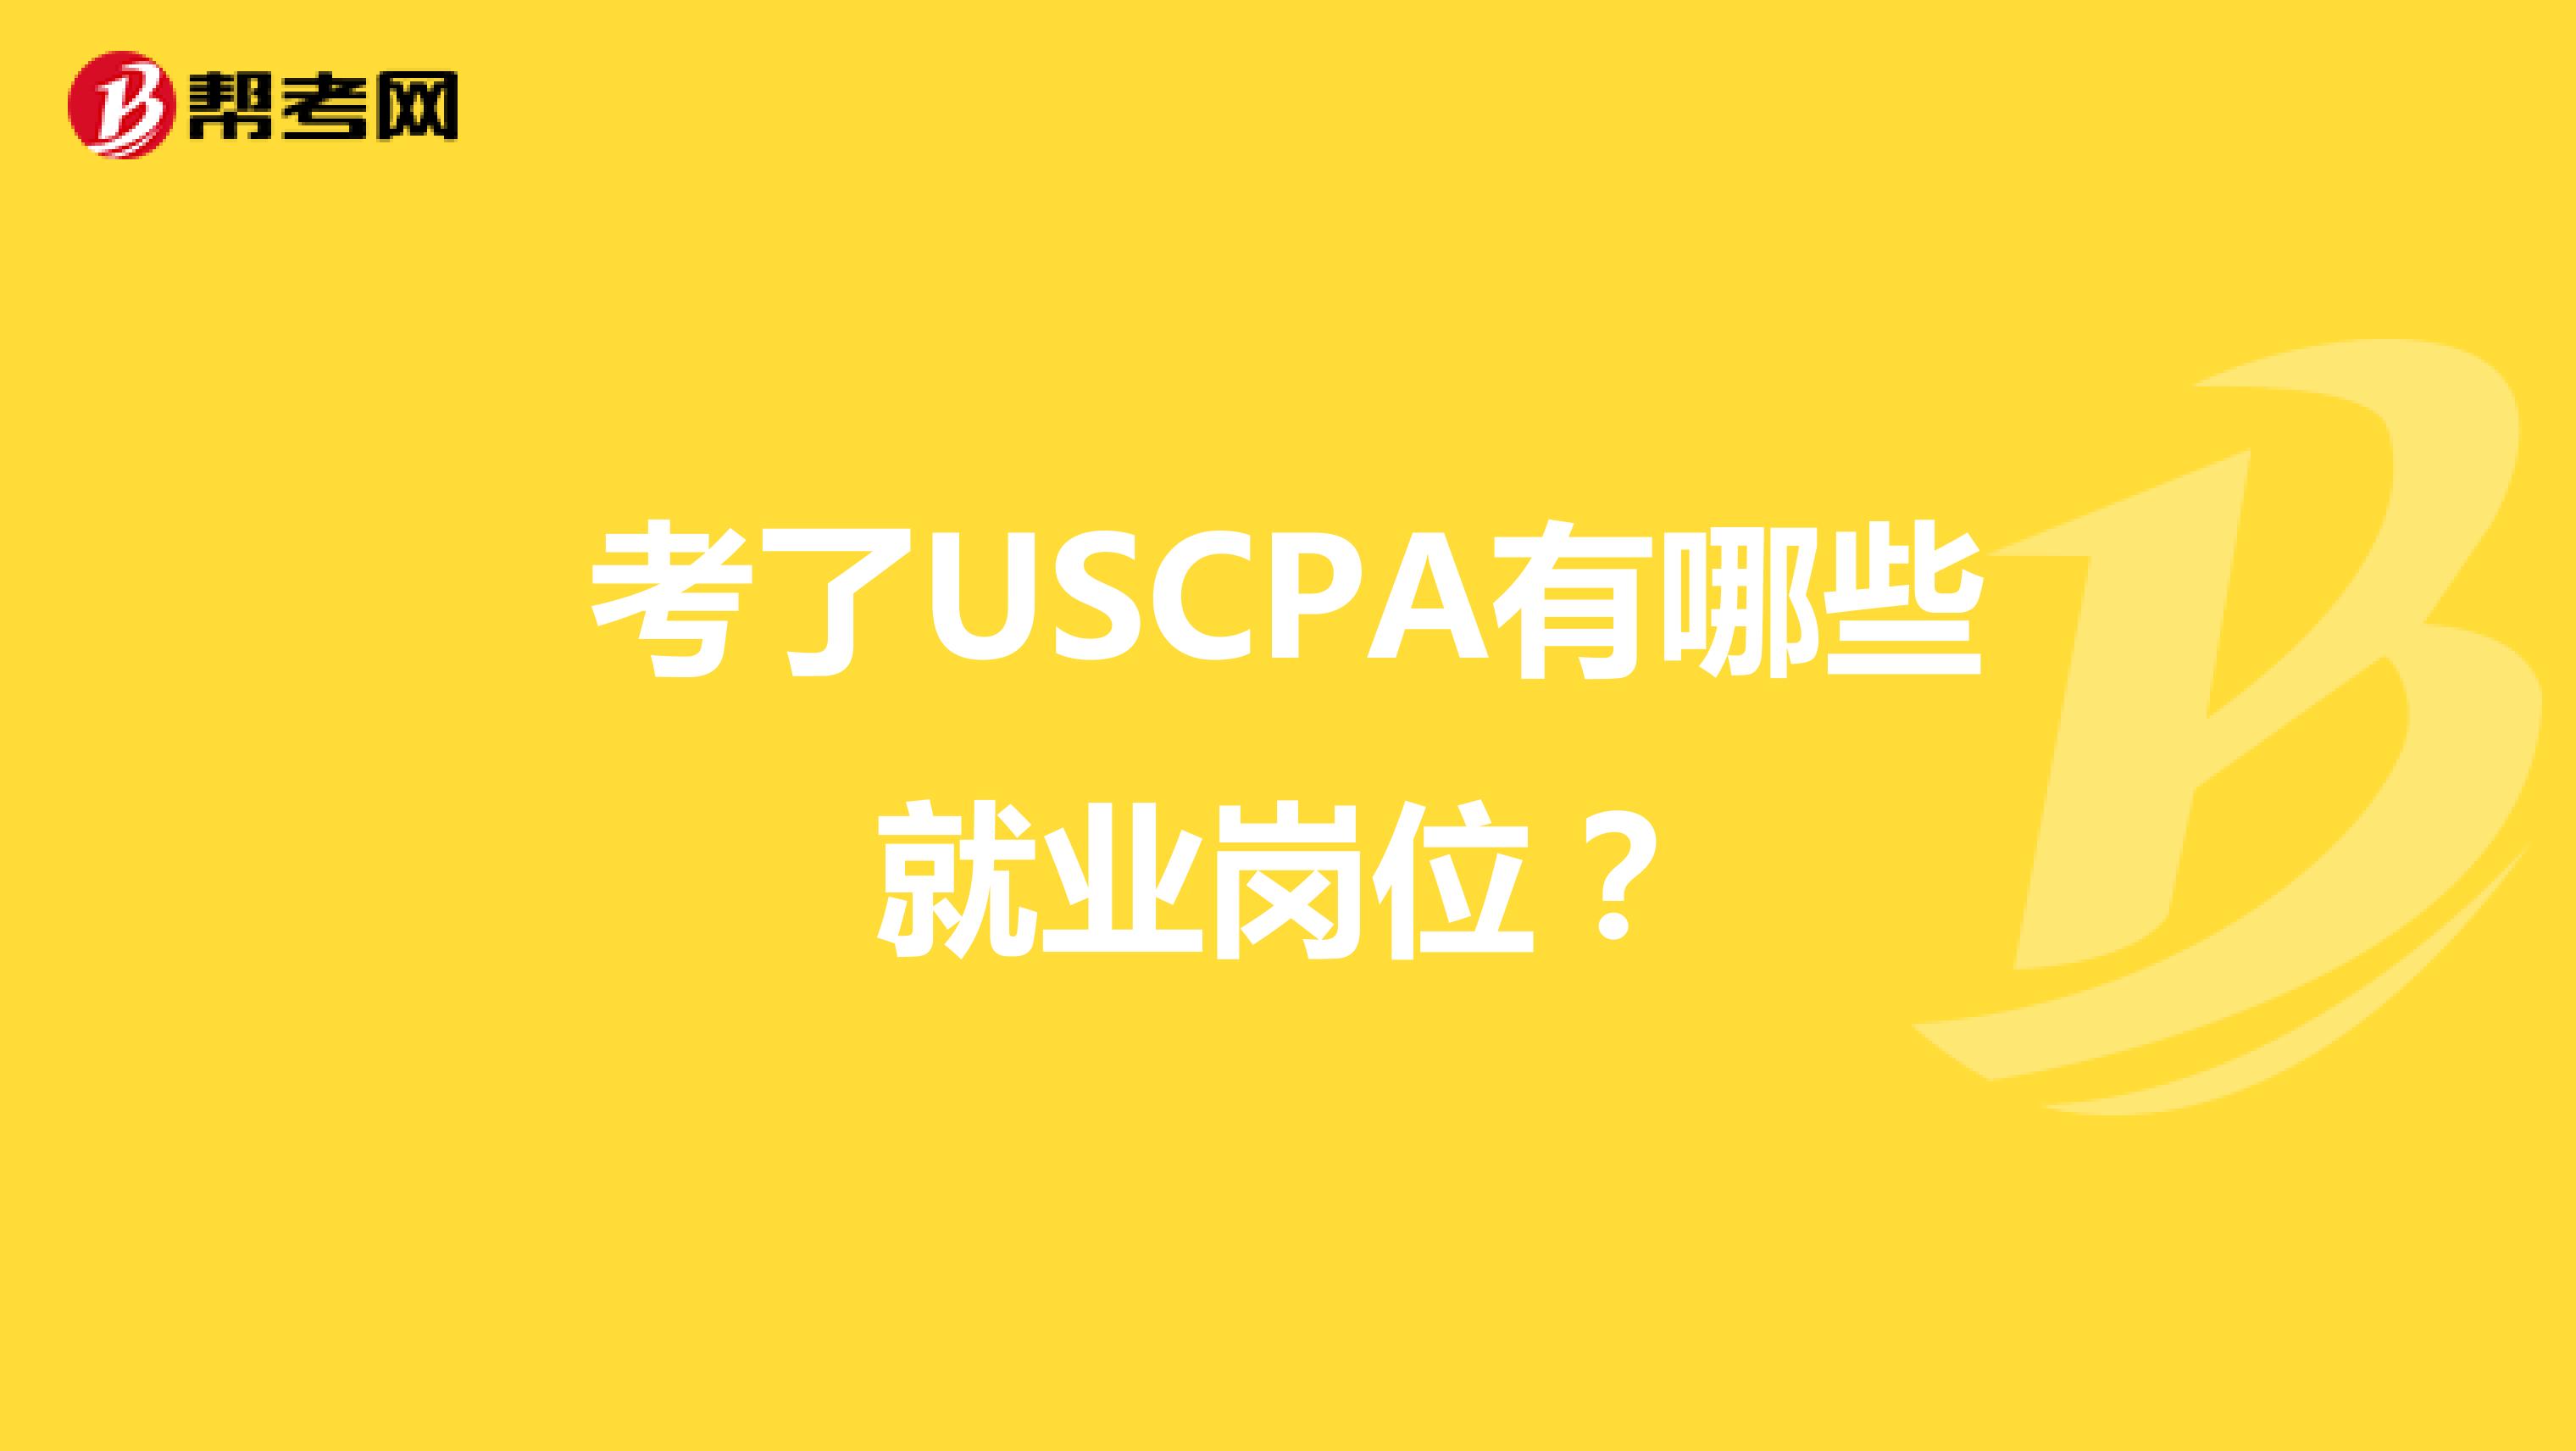 考了USCPA有哪些就业岗位？